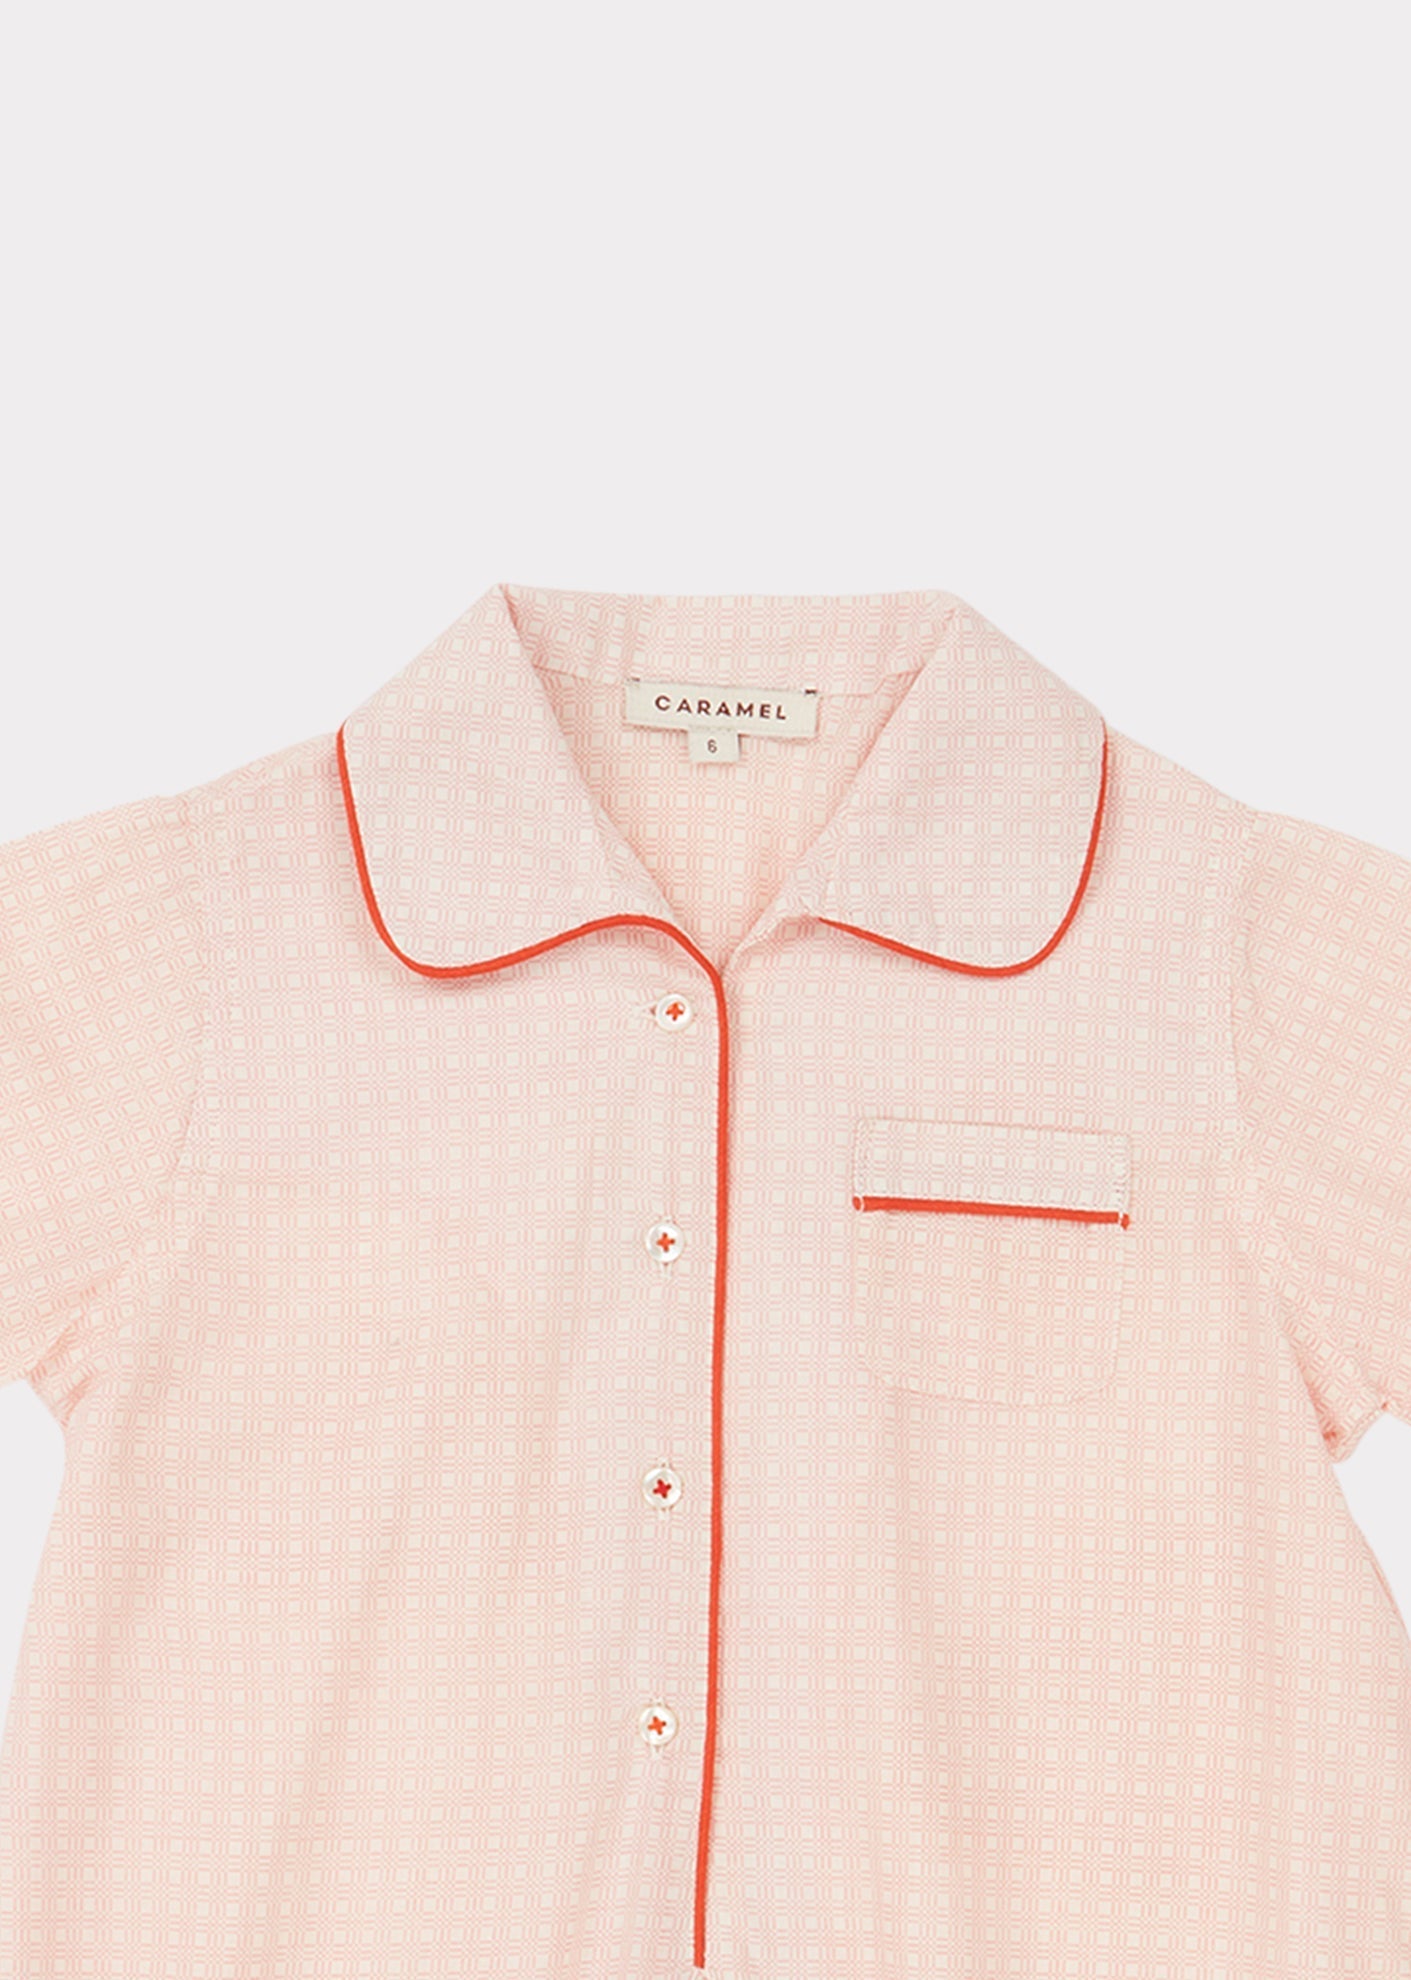 Baby Pyjamas, Pink Check